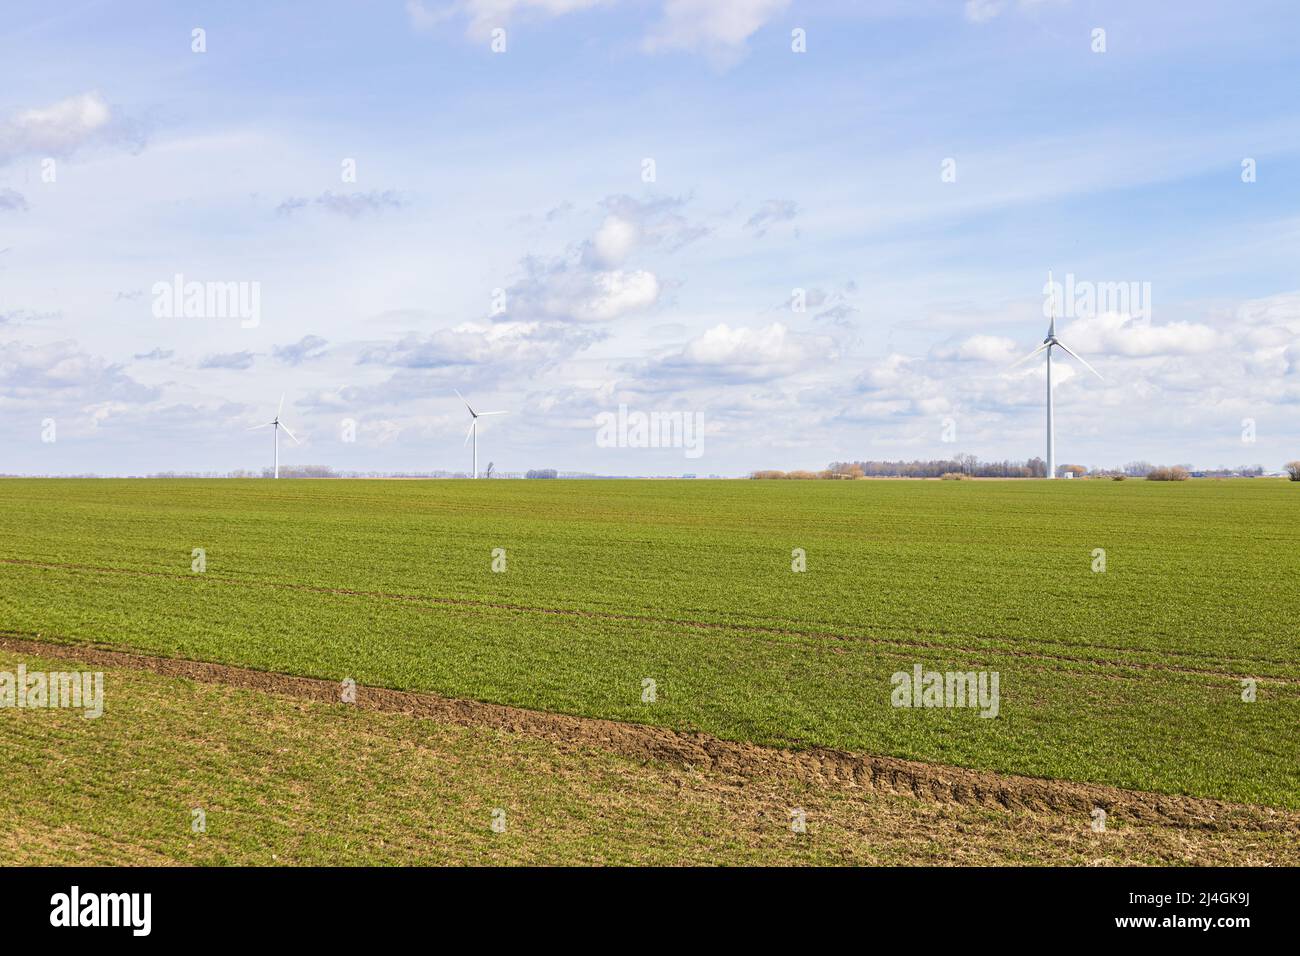 Le champ agricole sous ciel bleu et silhouettes d'éoliennes Banque D'Images